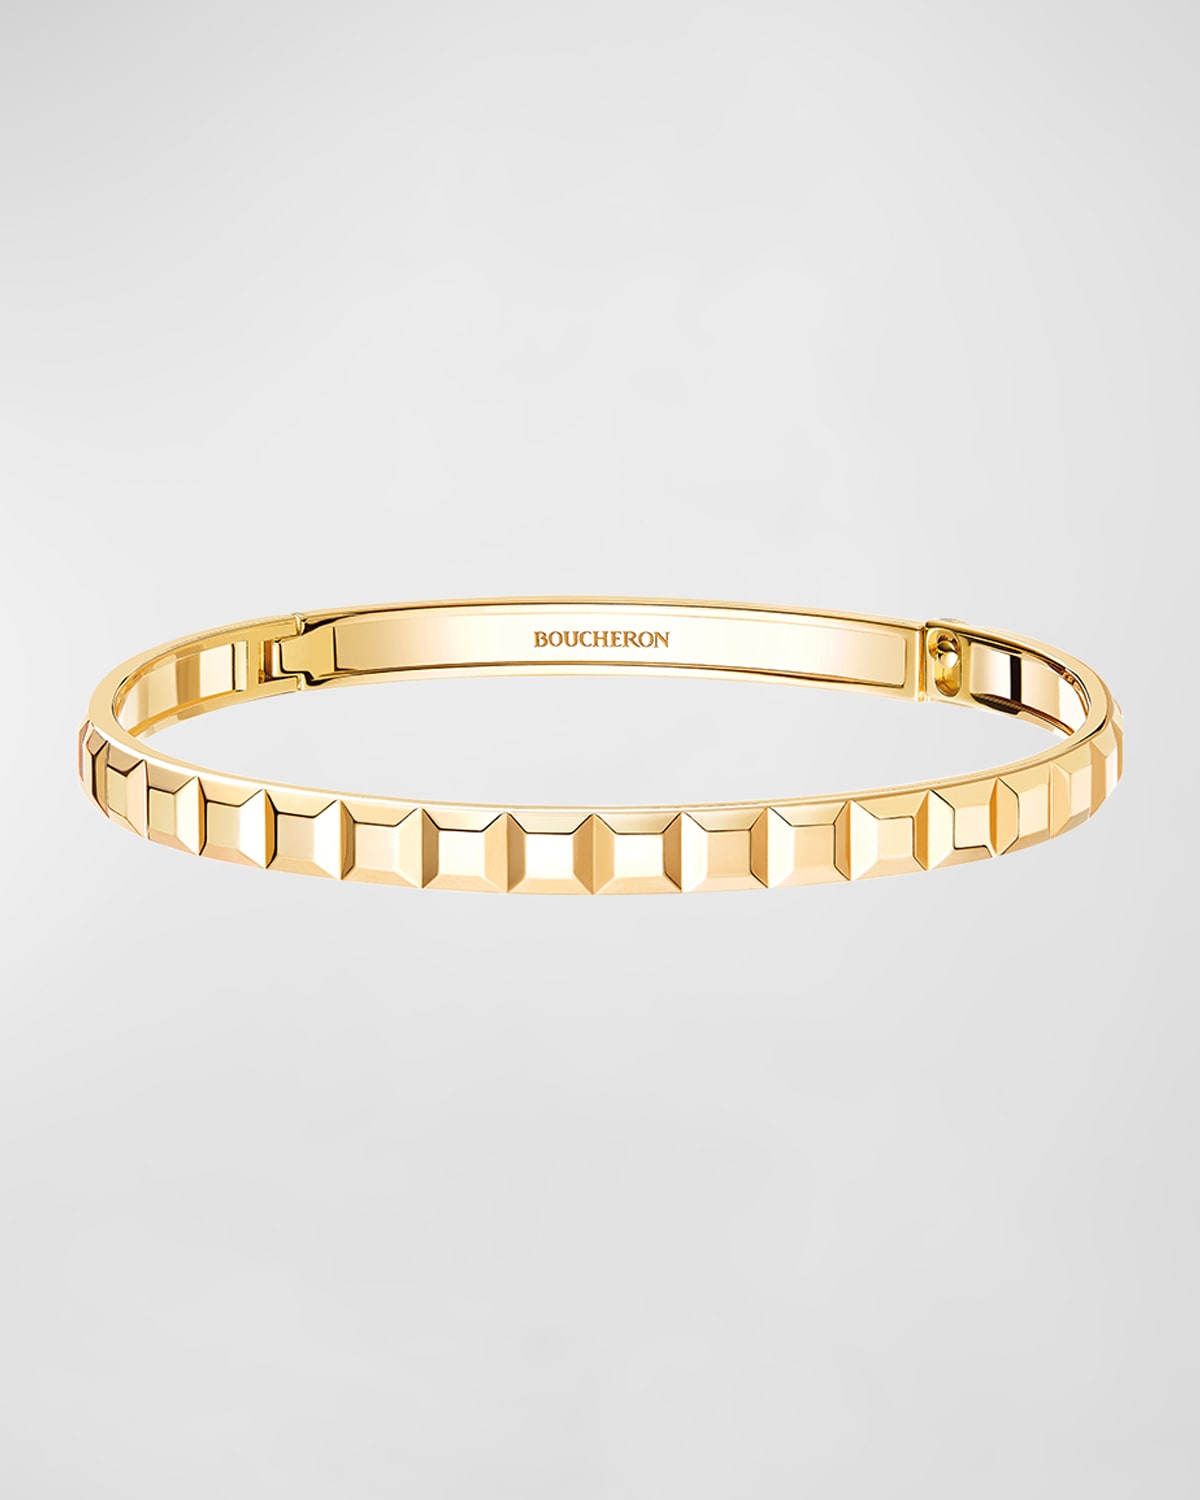 Boucheron Quatre Clou de Paris Bracelet in 18K Yellow Gold